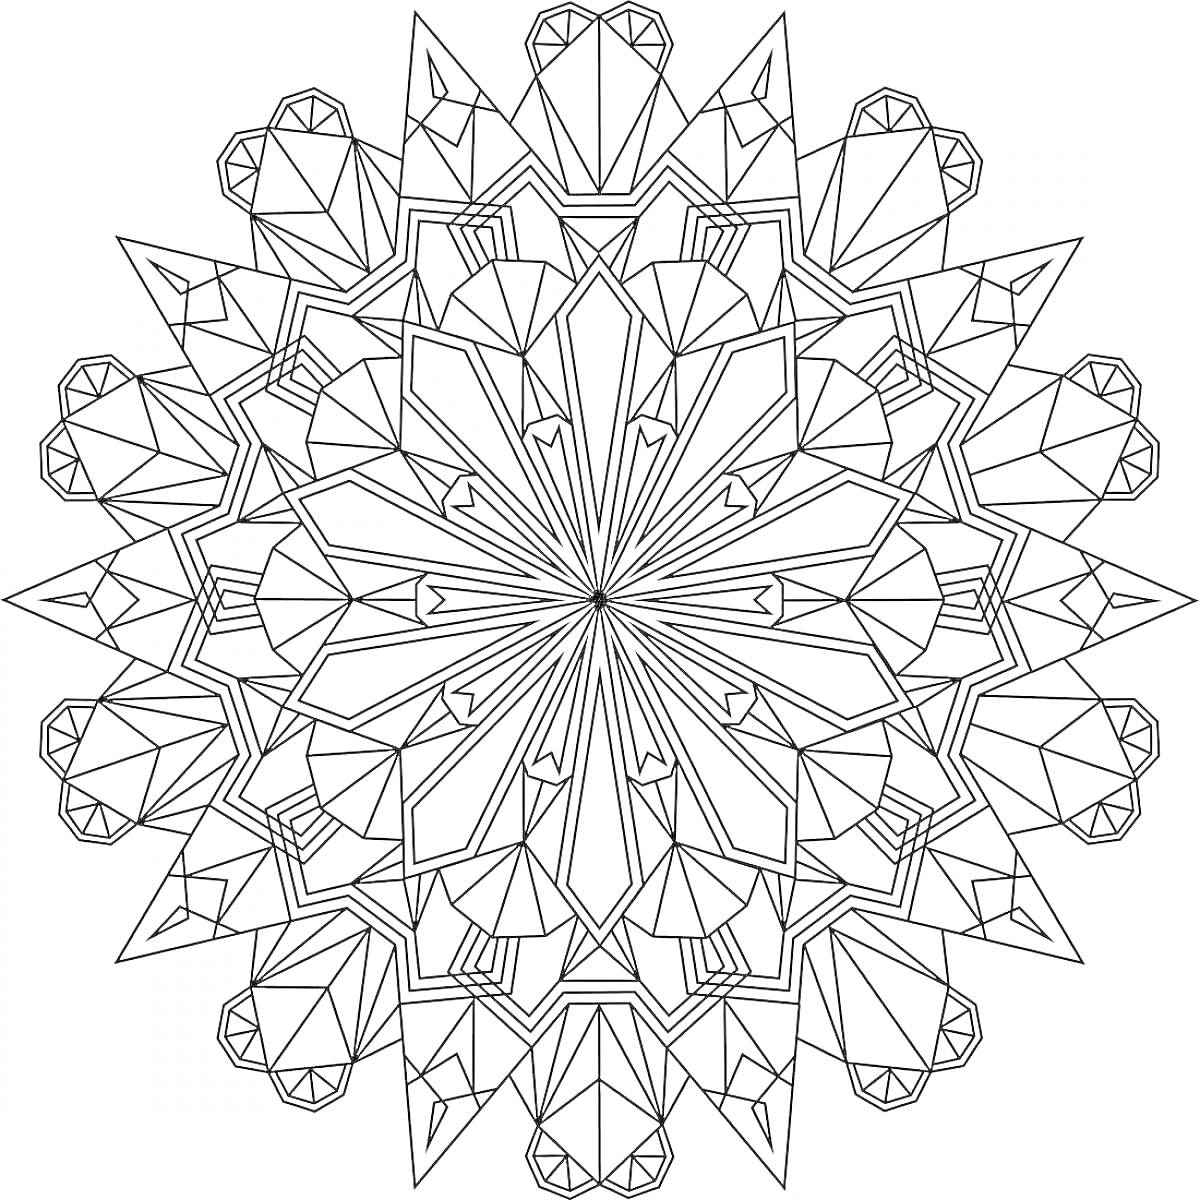 Раскраска Мандала с кристаллами - симметричный узор с повторяющимися кристаллами